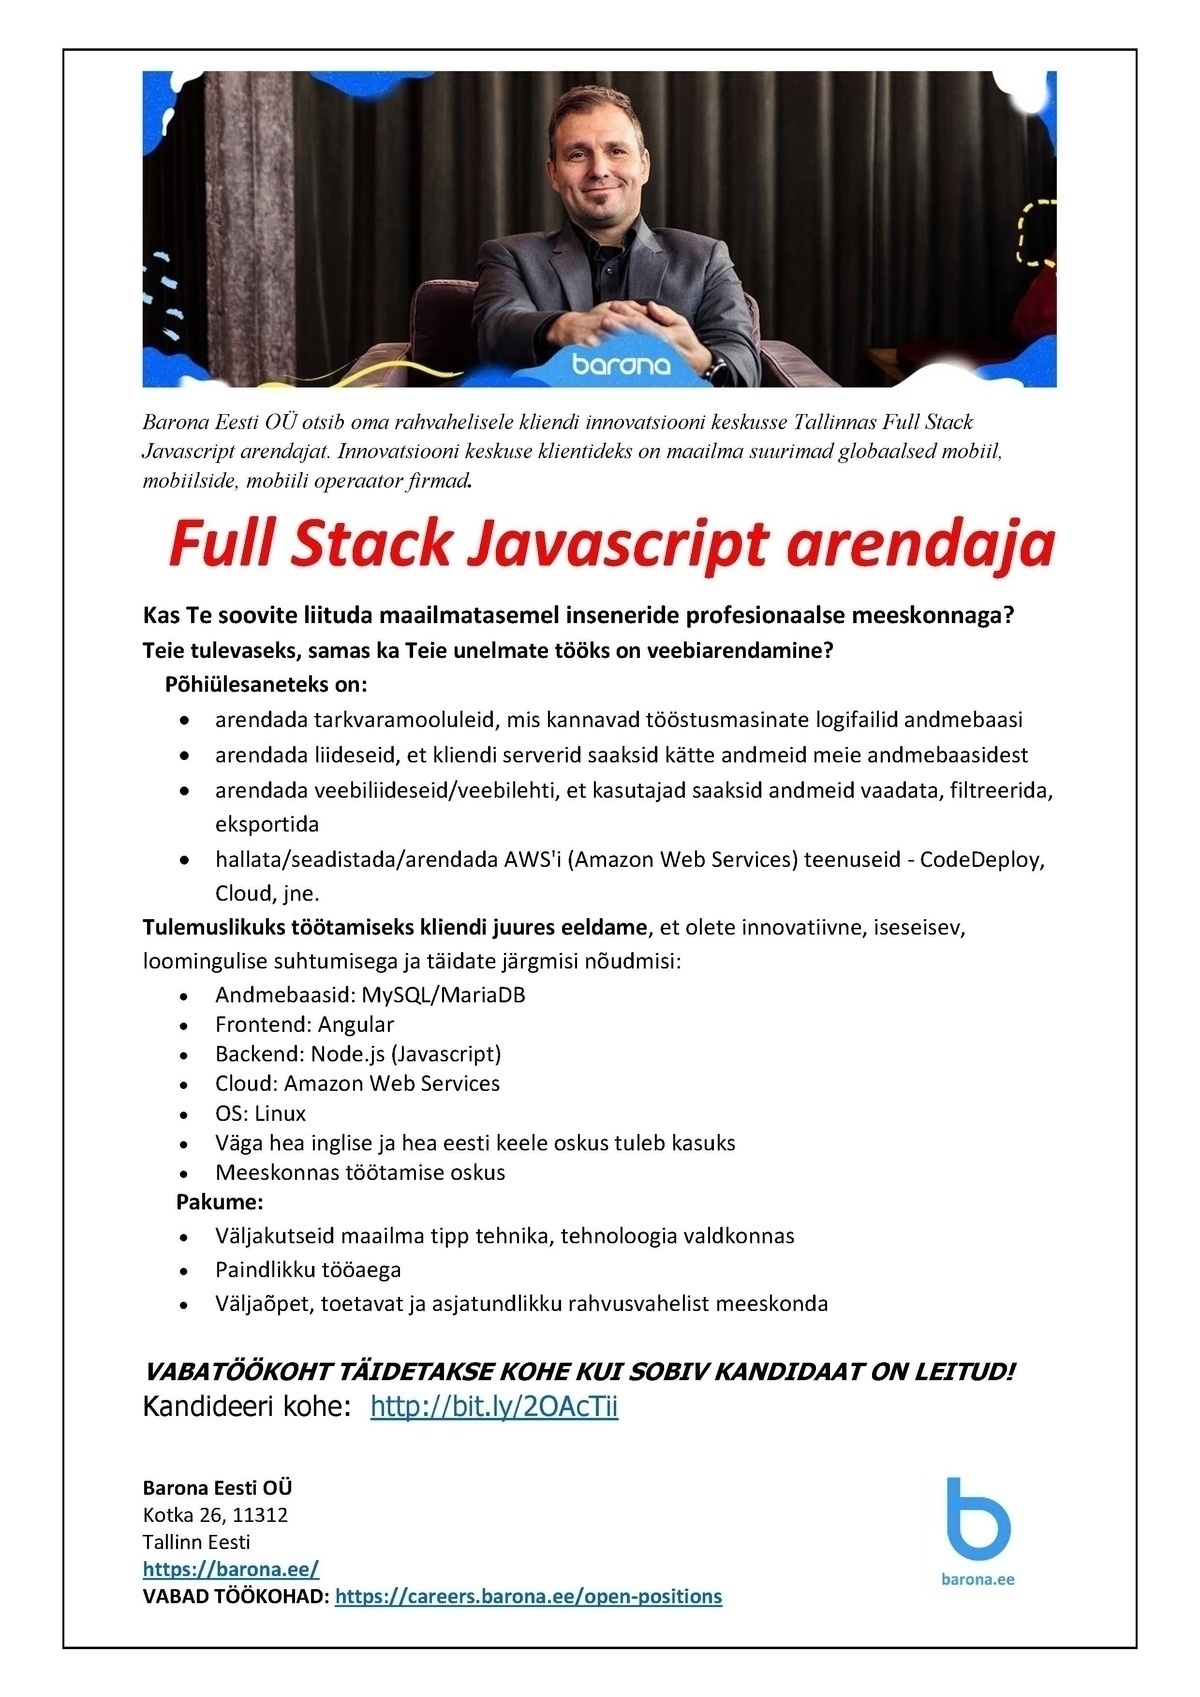 Barona Eesti OÜ FULL STACK Javascript web arendaja